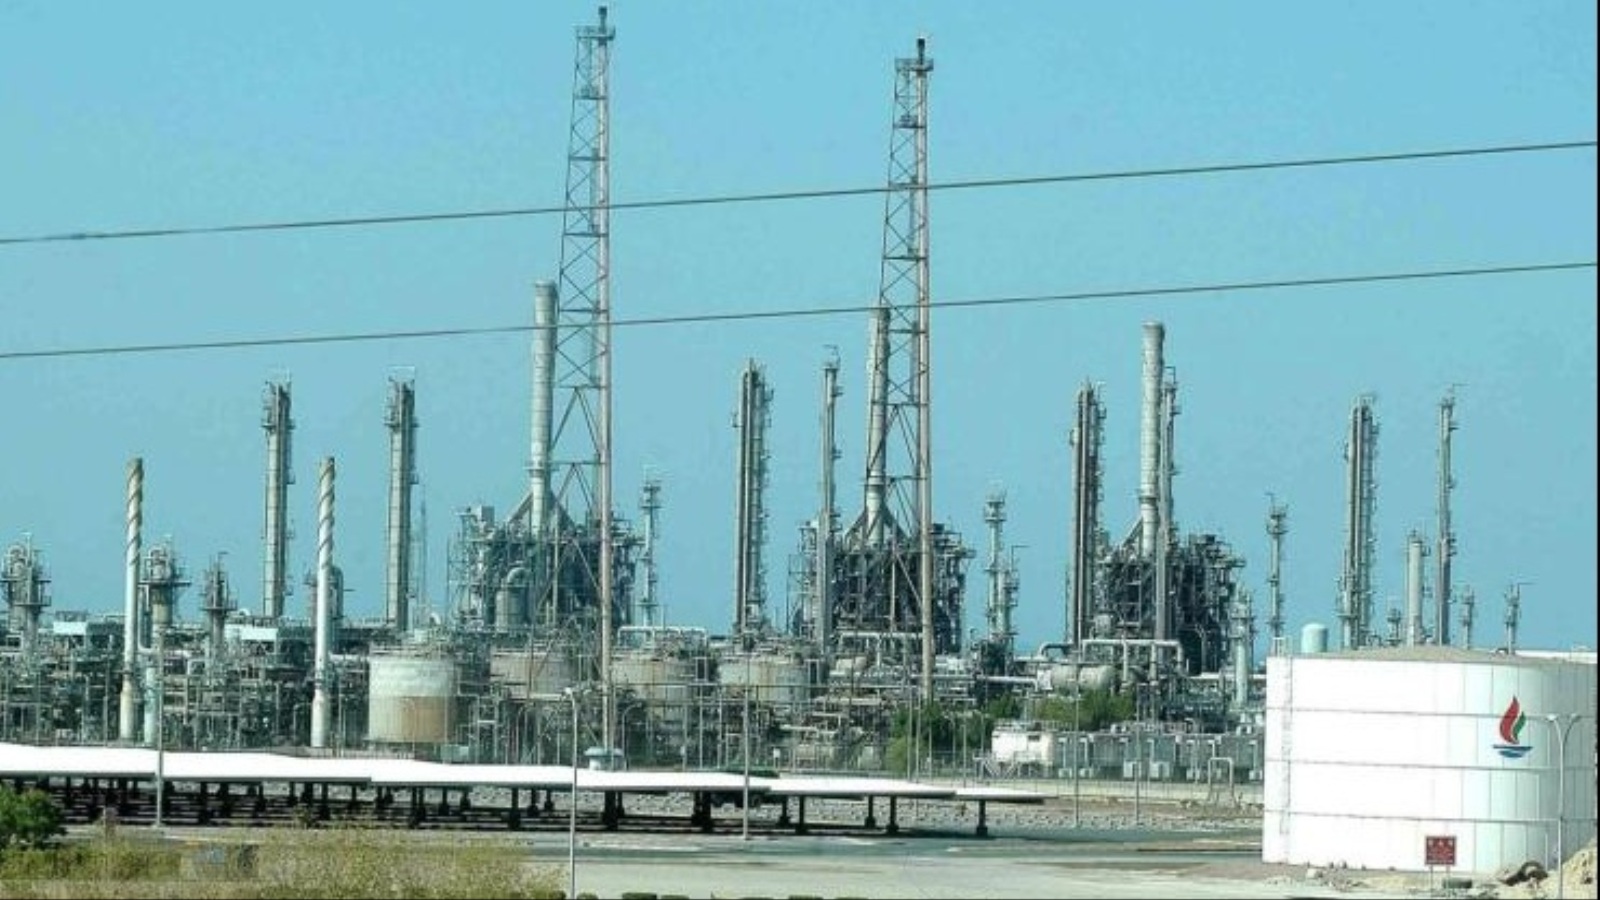 مصادر قالت إن السعودية تريد أن يكون لها القرار والسيطرة الكبرى في إدارة العمليات النفطية بالمنطقة(الجزيرة نت)